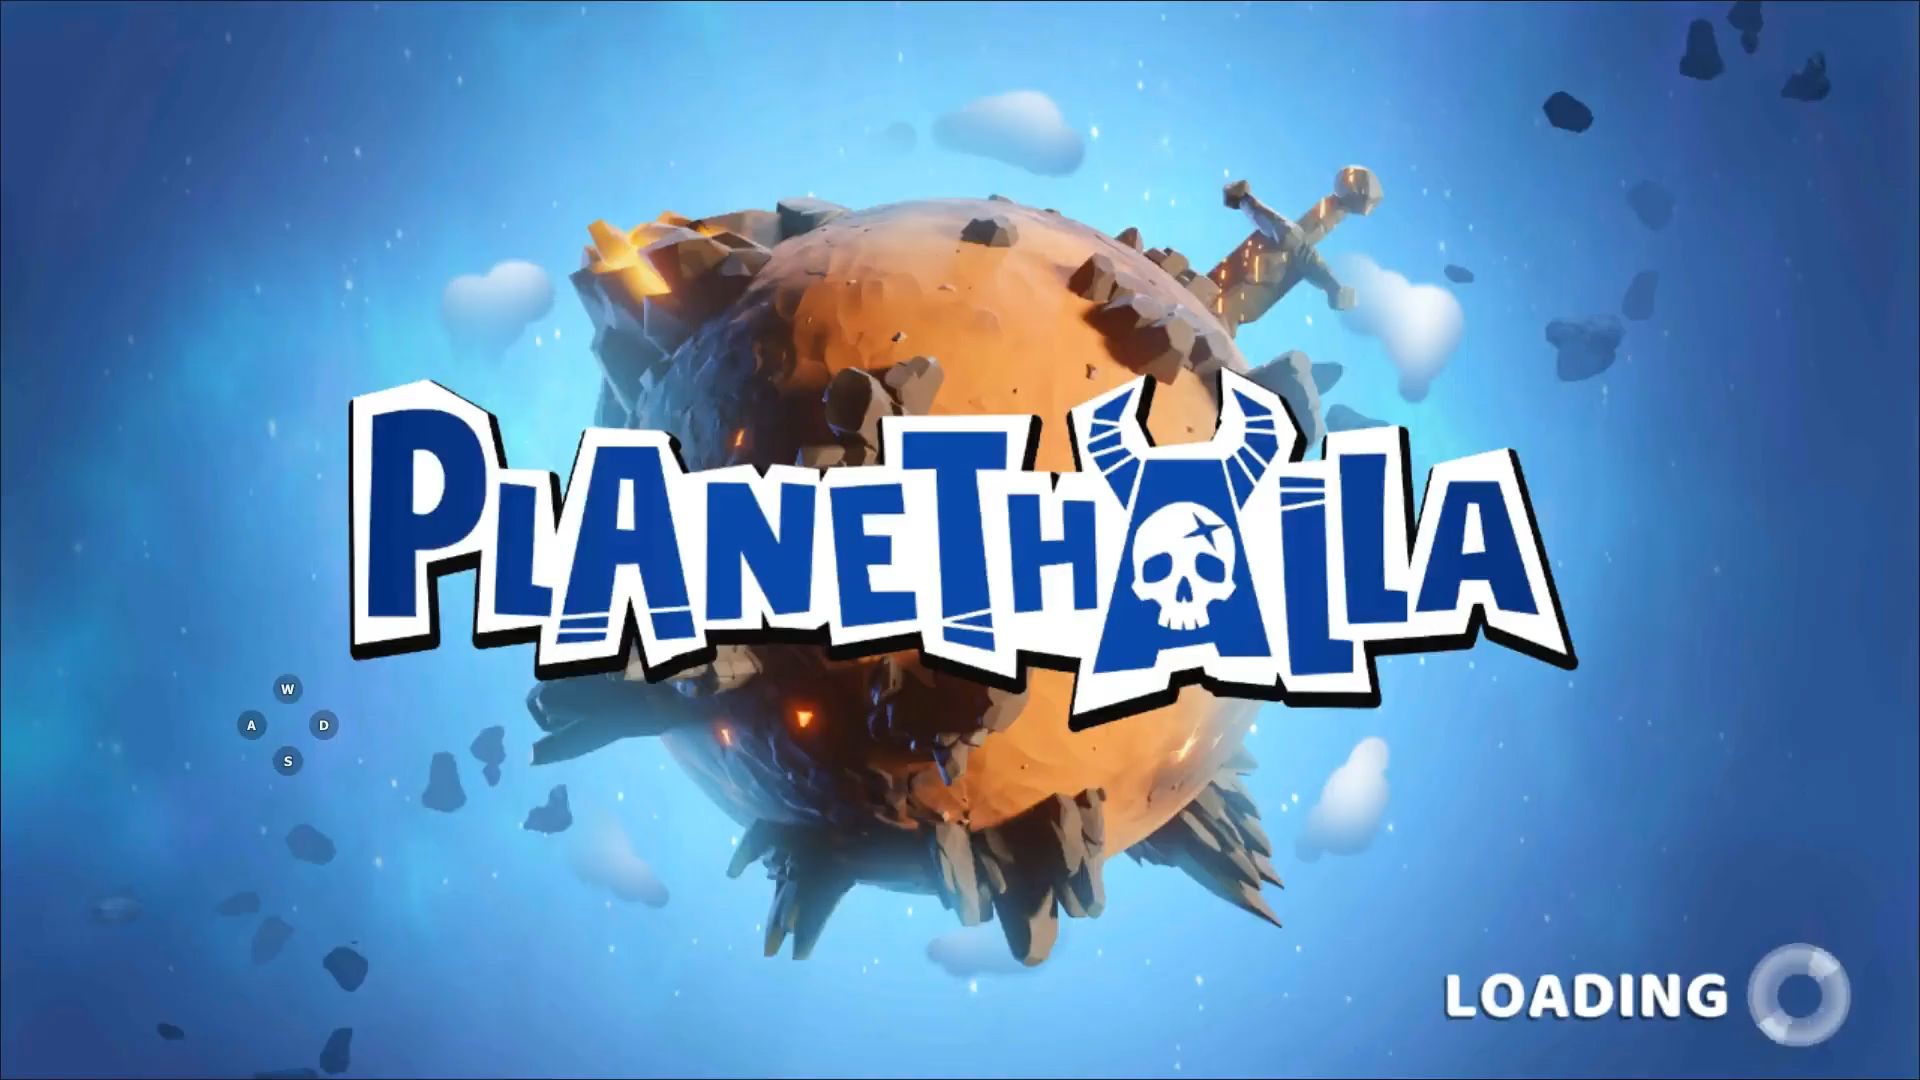 Télécharger Planethalla pour Android gratuit.